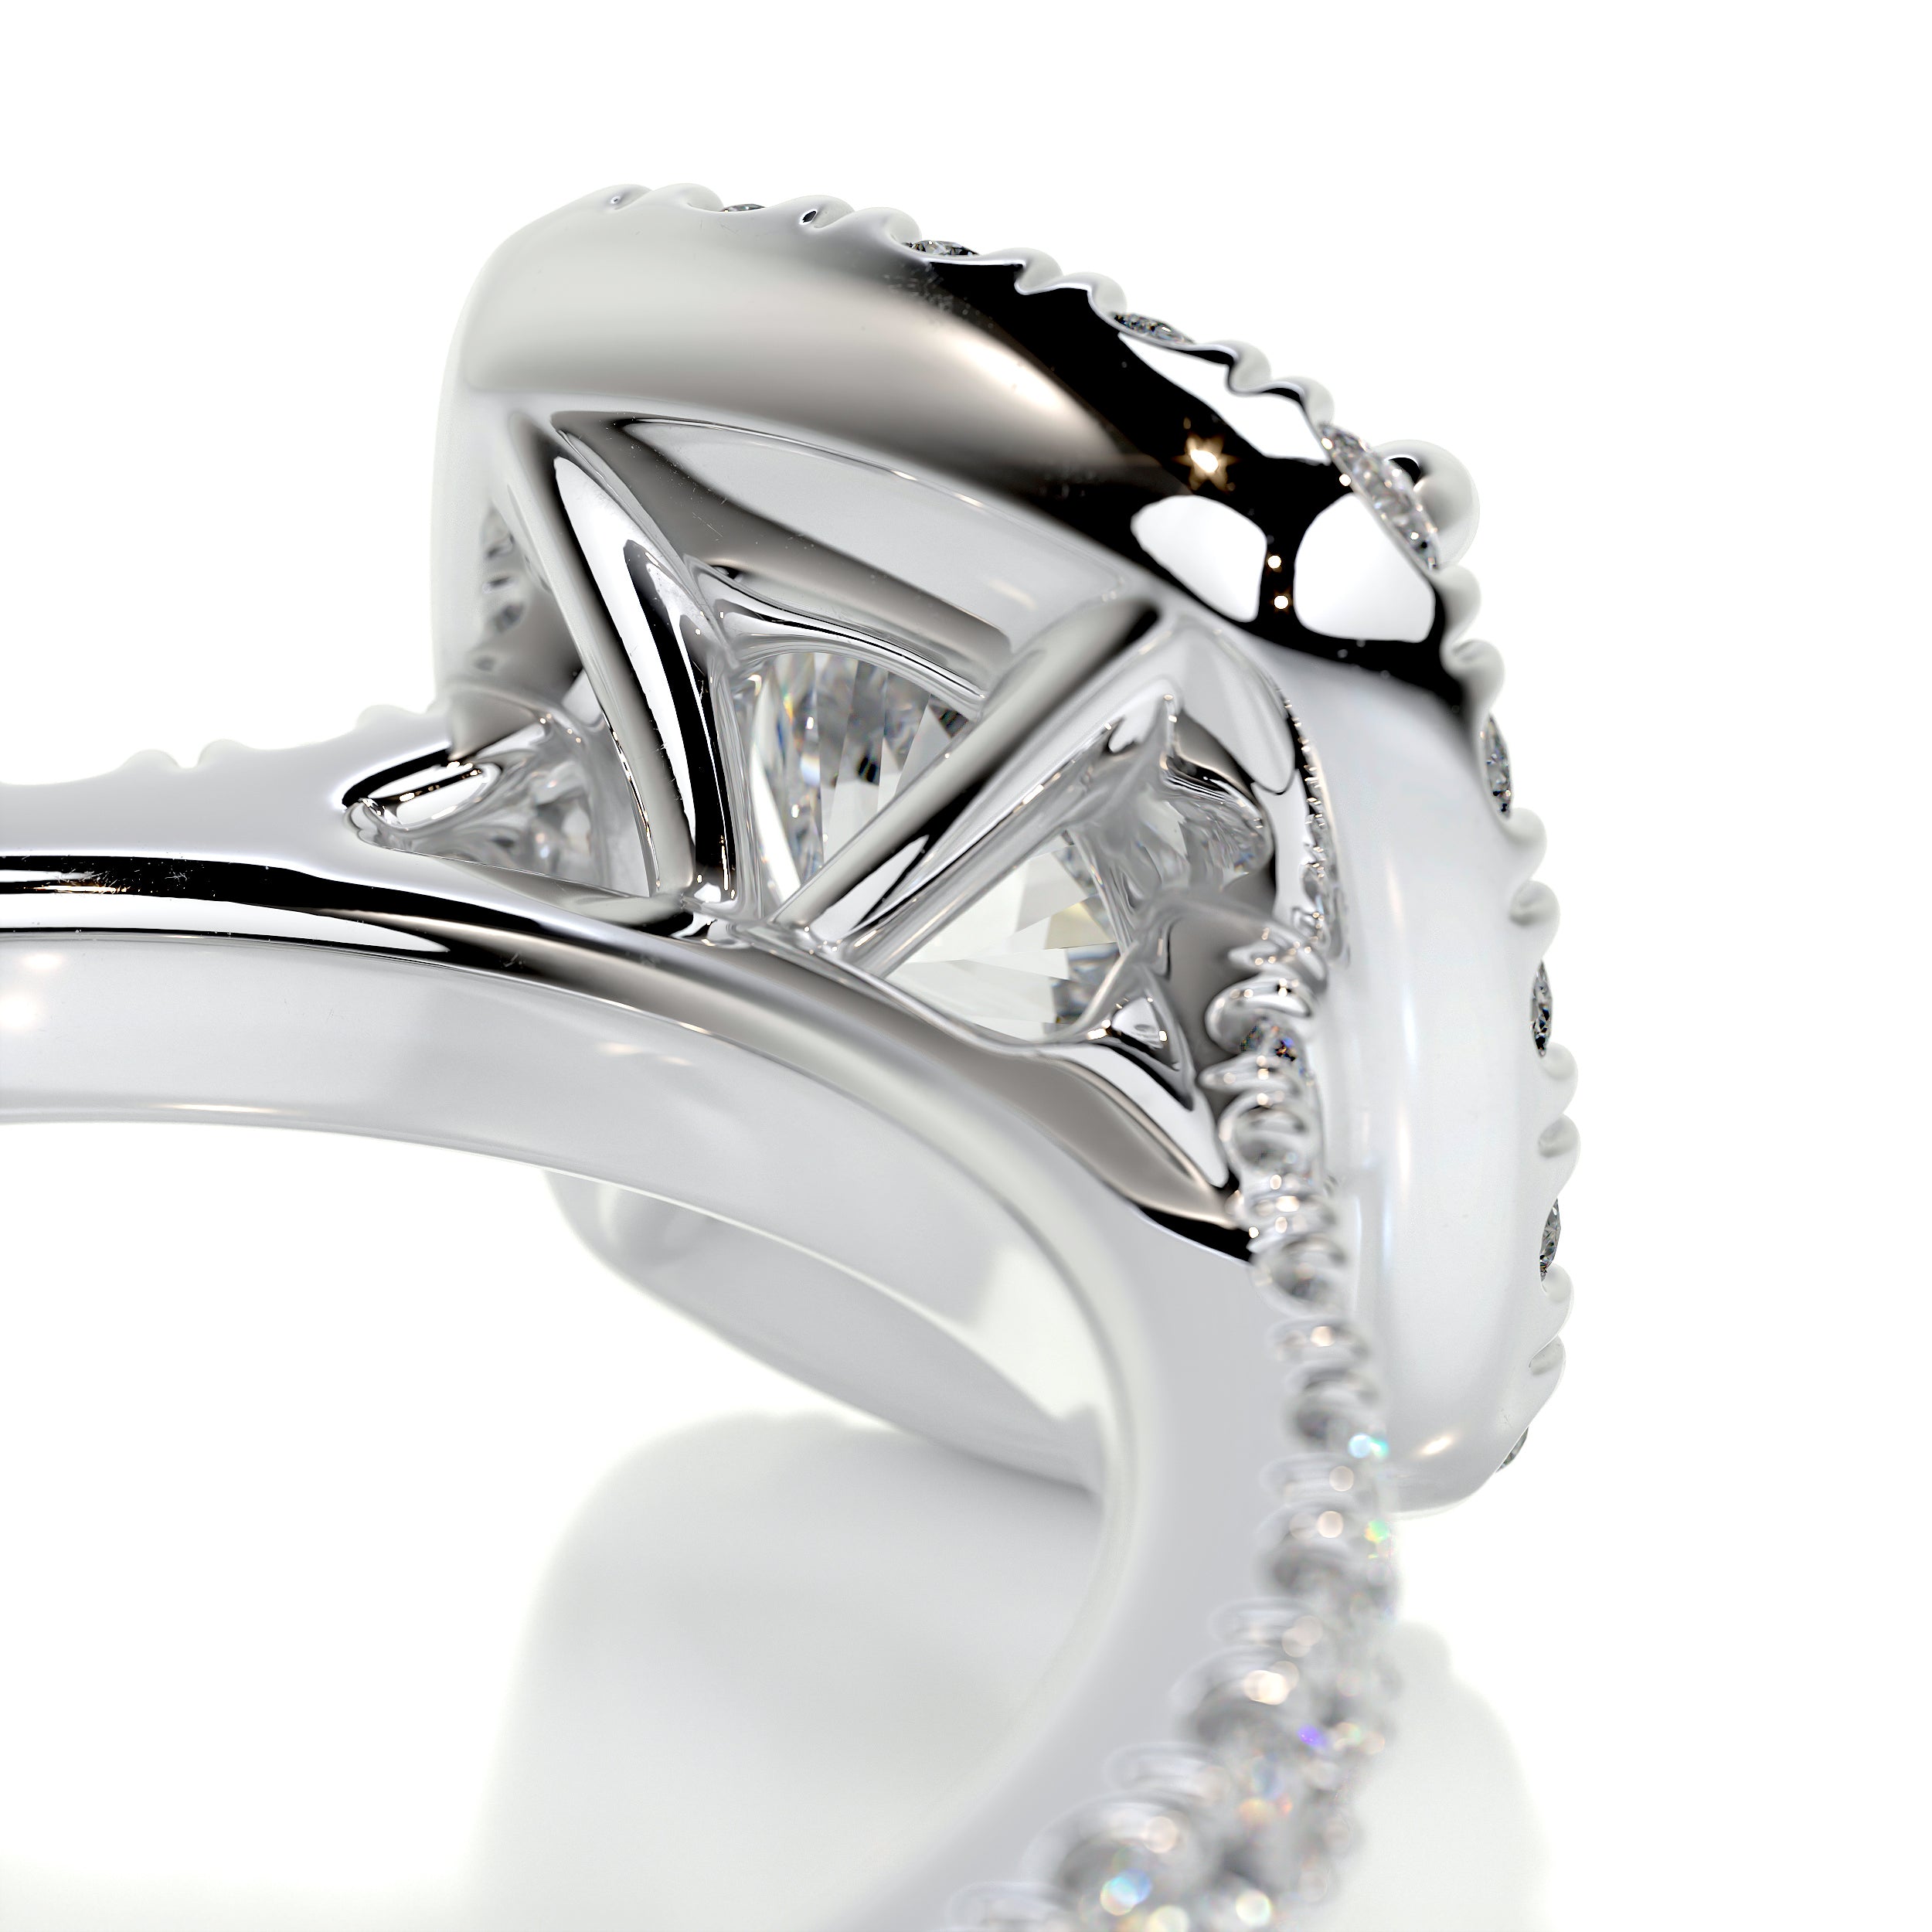 Claudia Diamond Engagement Ring -Platinum